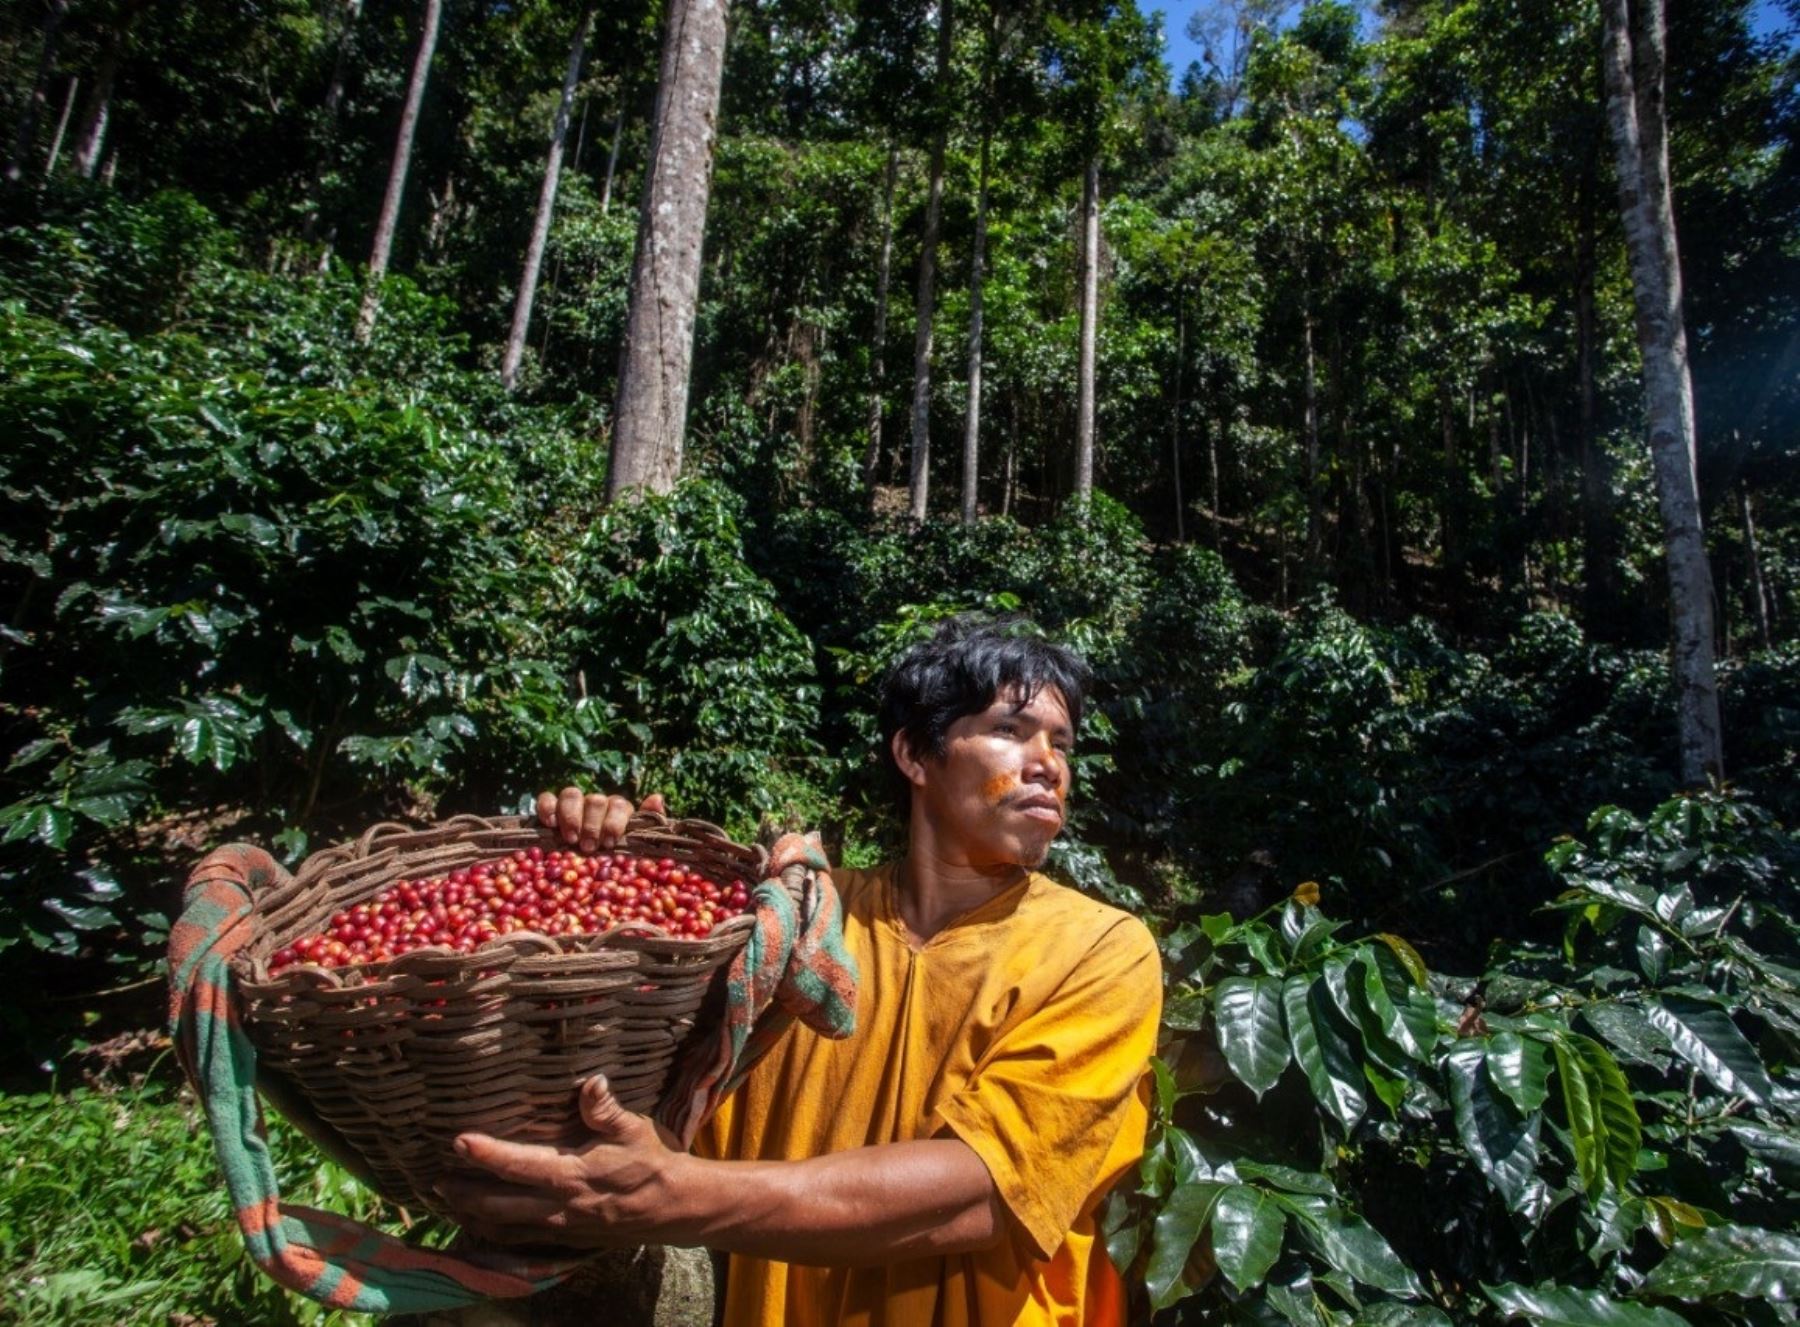 El aguaje, la castaña y el café bajo sombra de árboles maderables son los negocios ecológicos de moda que posicionan a las comunidades amazónicas de tres regiones que se benefician de mejores ingresos económicos. ANDINA/Difusión